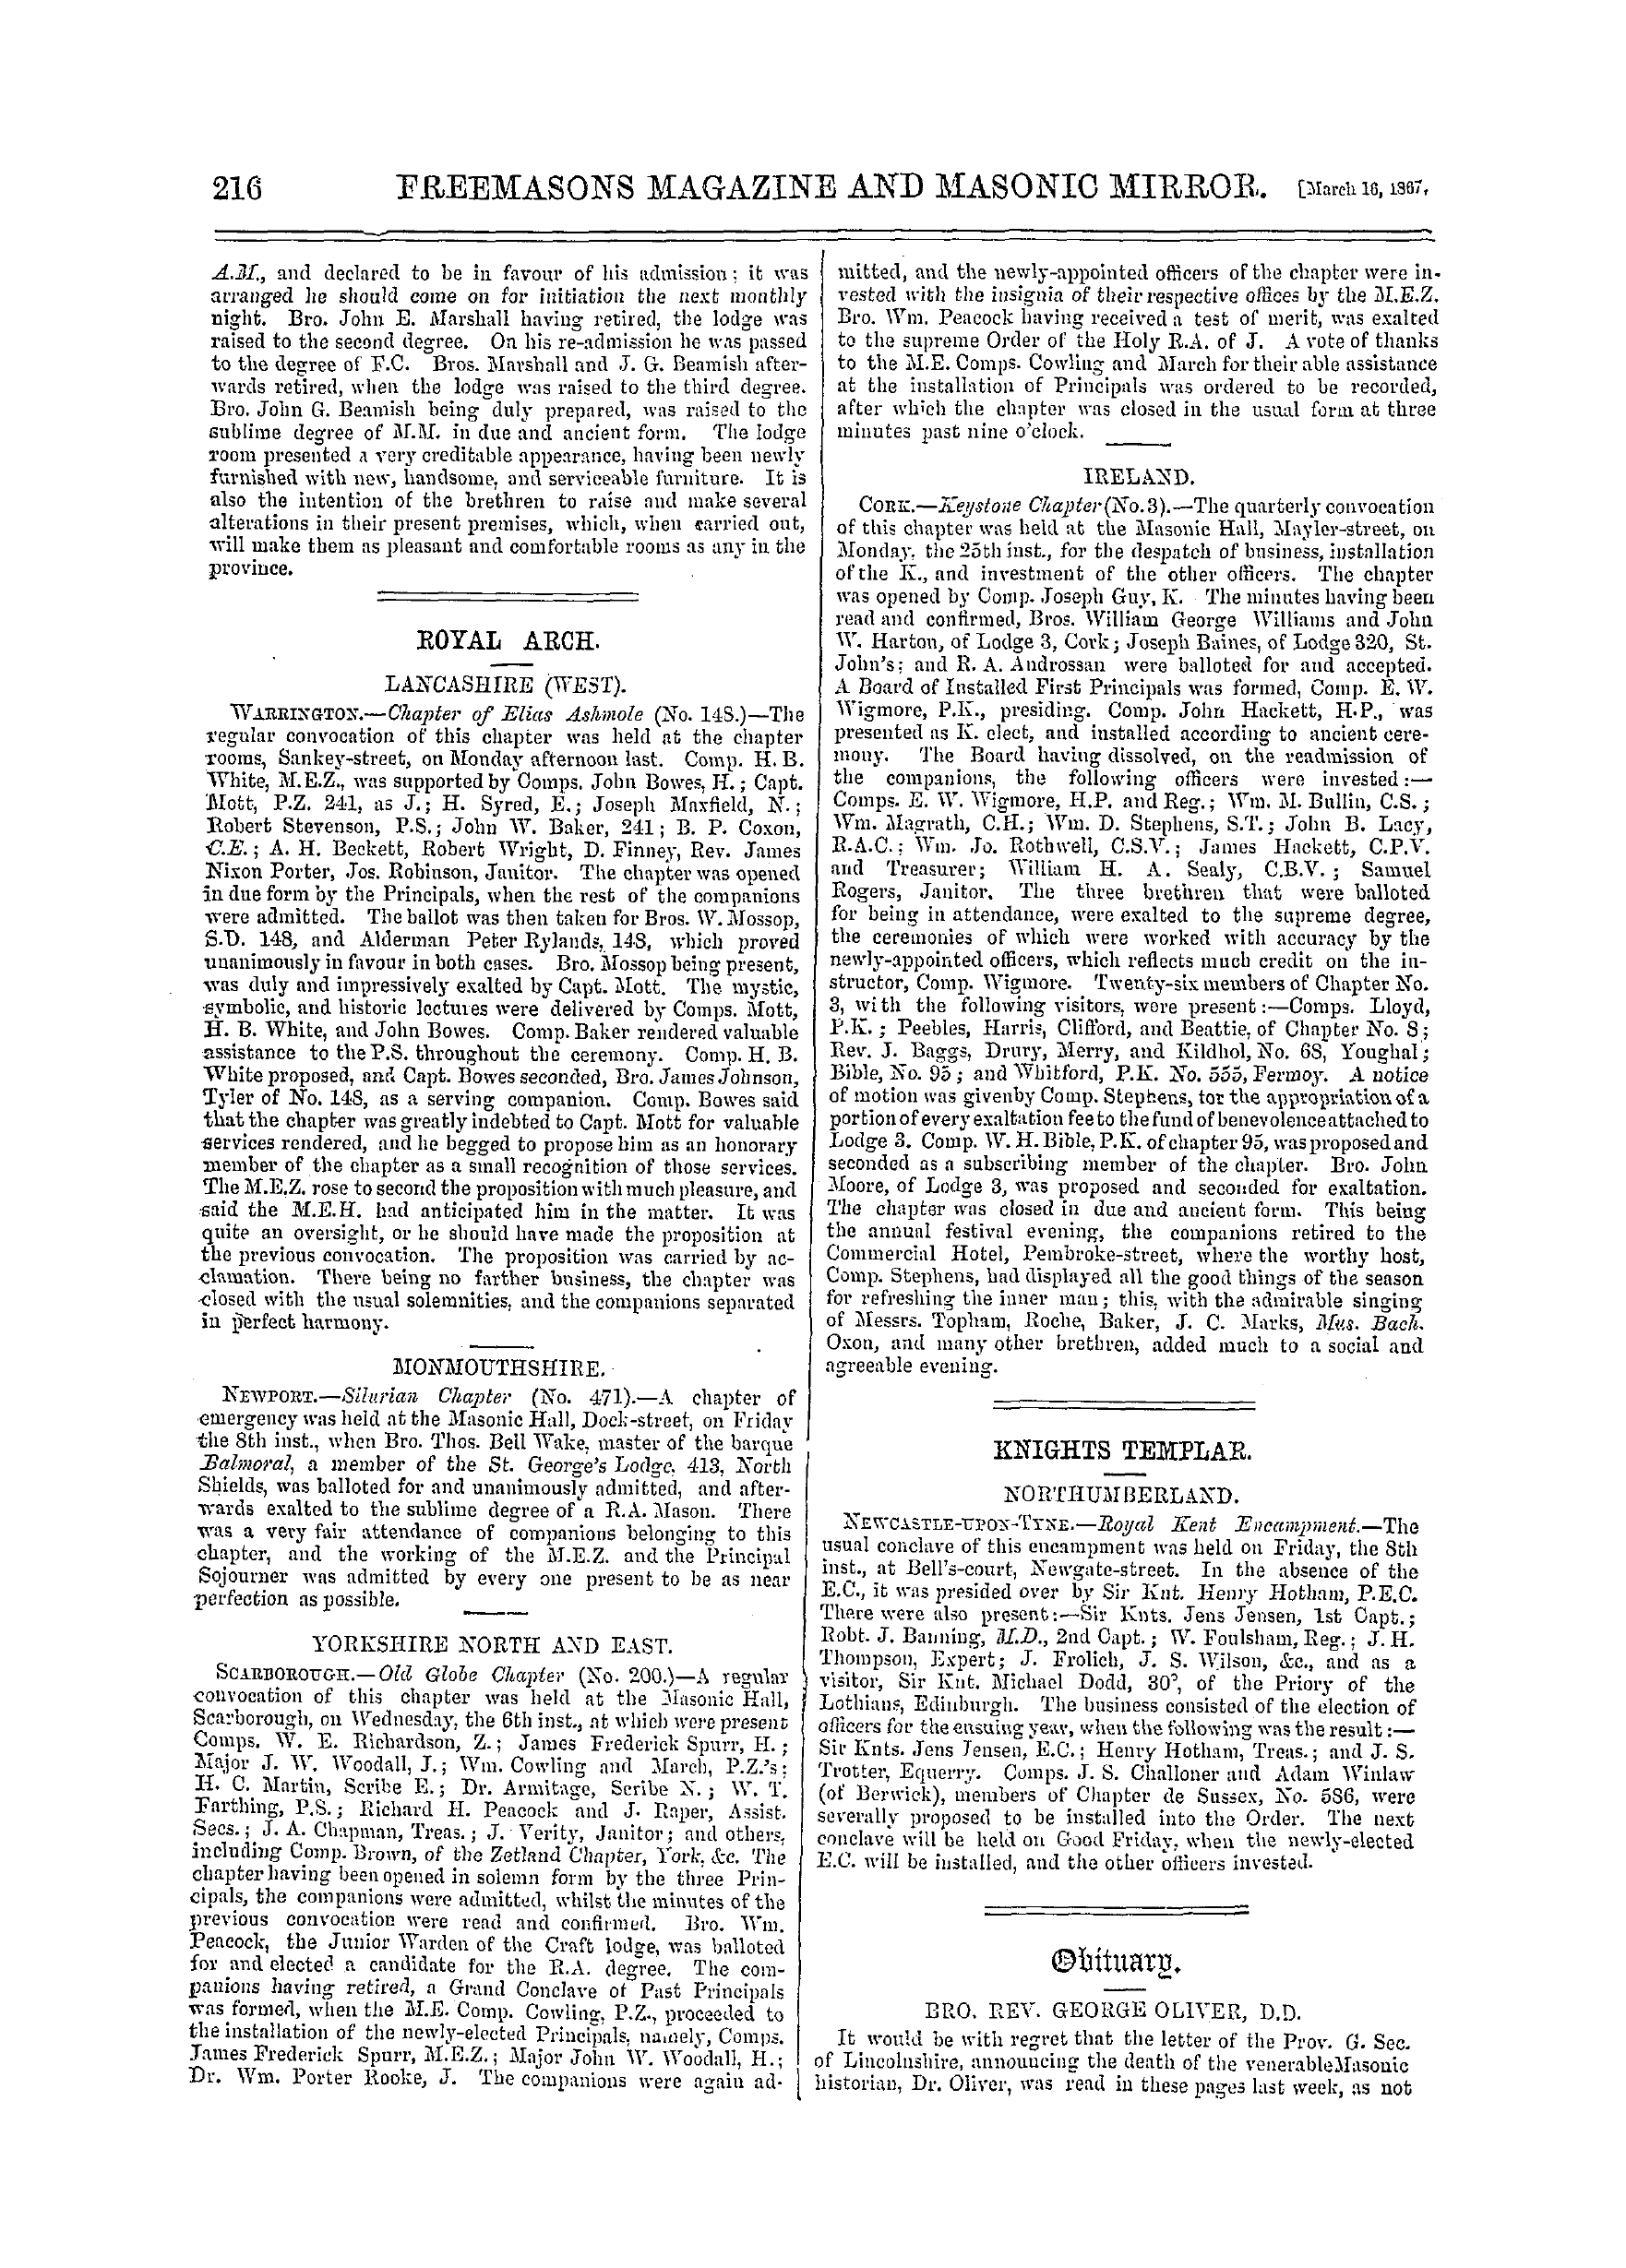 The Freemasons' Monthly Magazine: 1867-03-16 - Ireland.